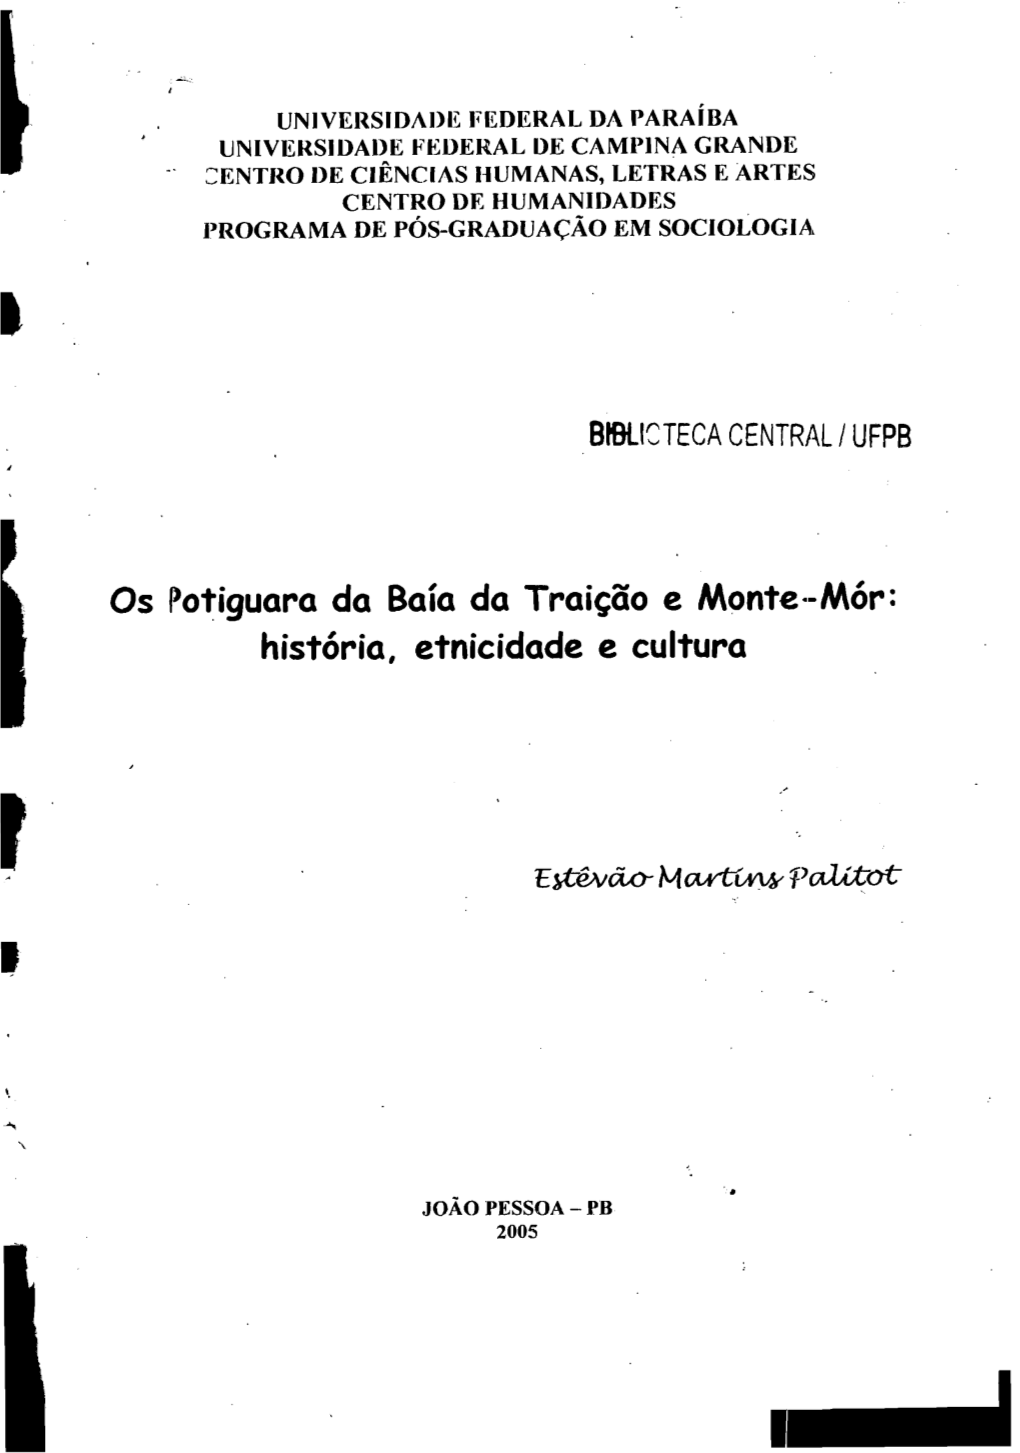 Os Potiguara Da Baía Da Traição E Montea-Mór: História, Etnicidade E Cultura C Icstêvão Martins Palitot